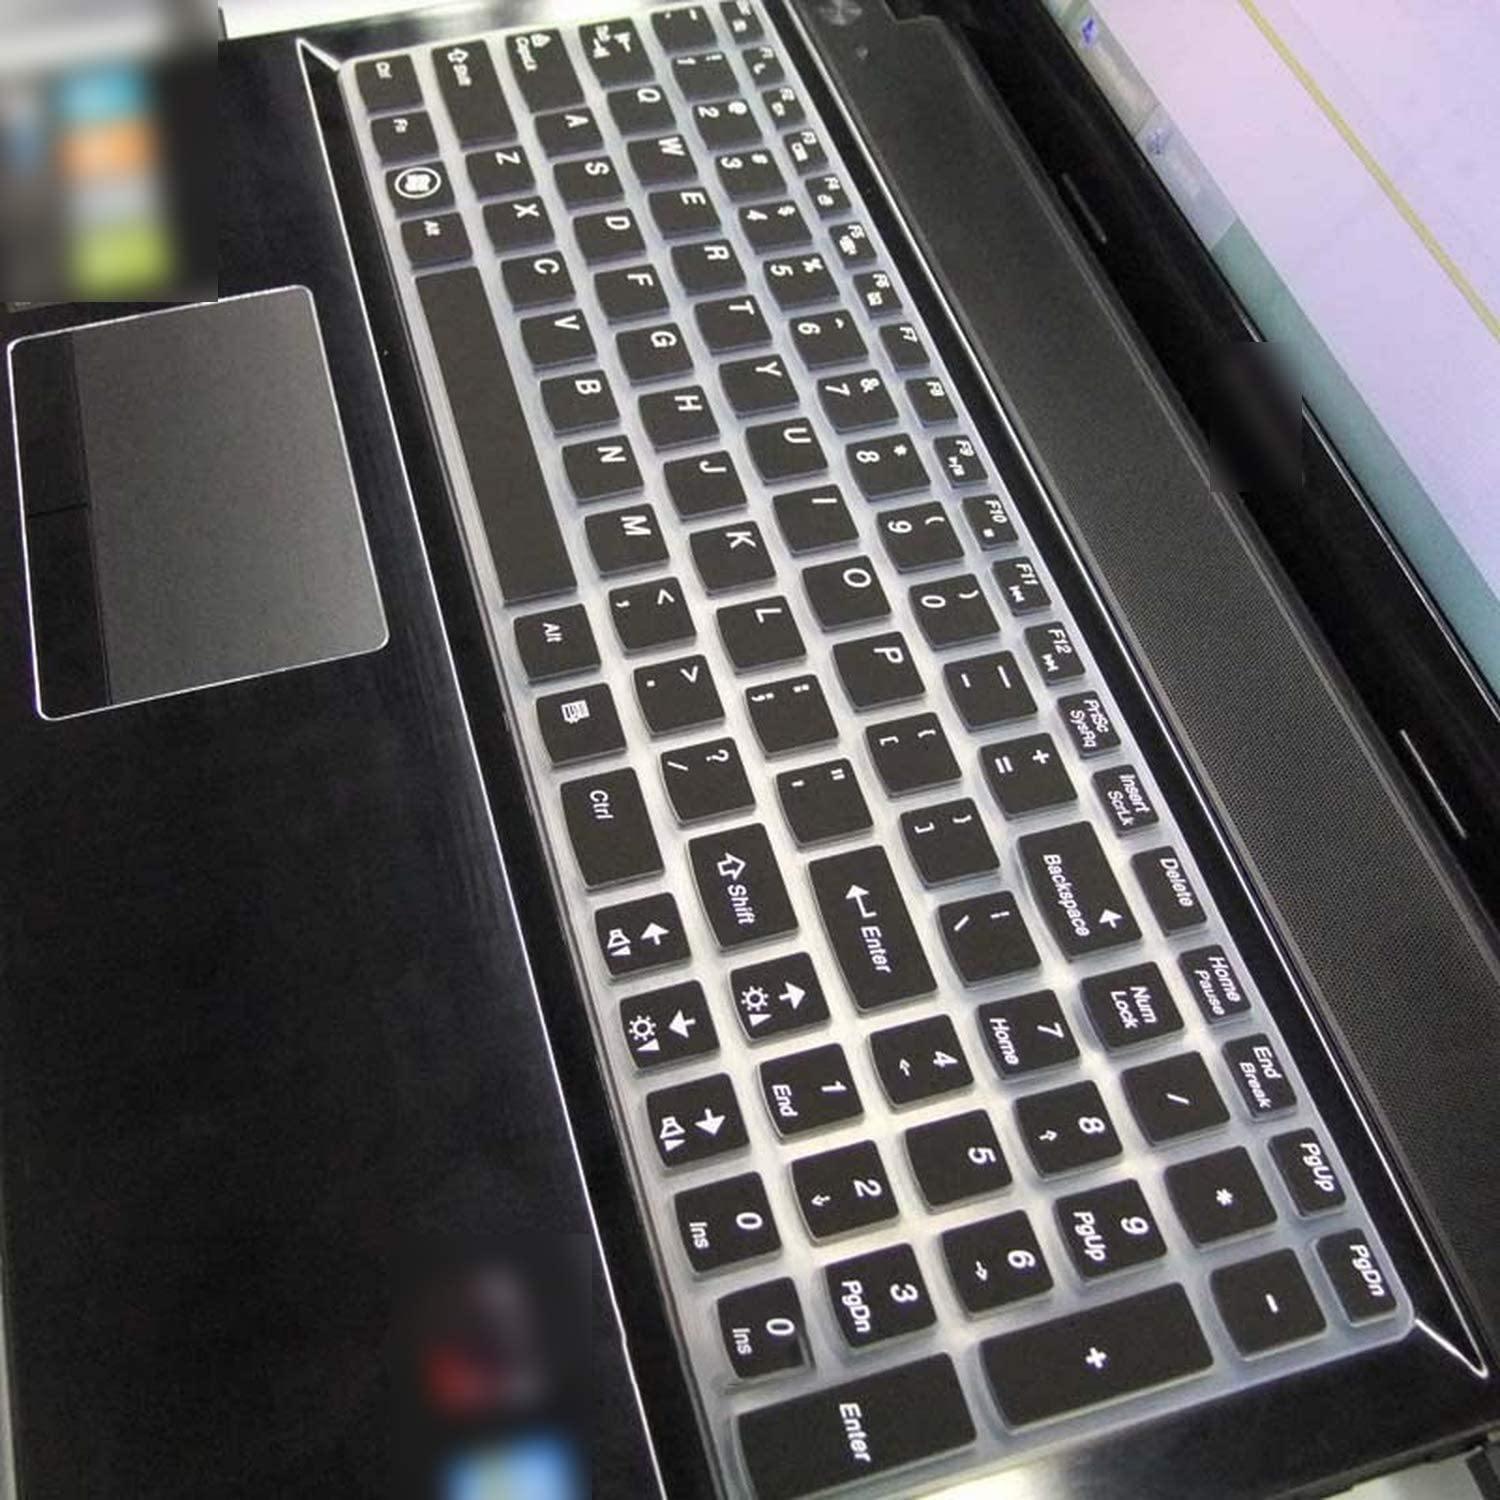 Dealsplant Keyboard Skin protector for Lenovo Ideapad 15 inch Z580 Z560 Z565 Z570 Z575 Z500 Z501 Z505 Z510 Z585 V580 V570 U510 S500-Keyboard Protectors-dealsplant